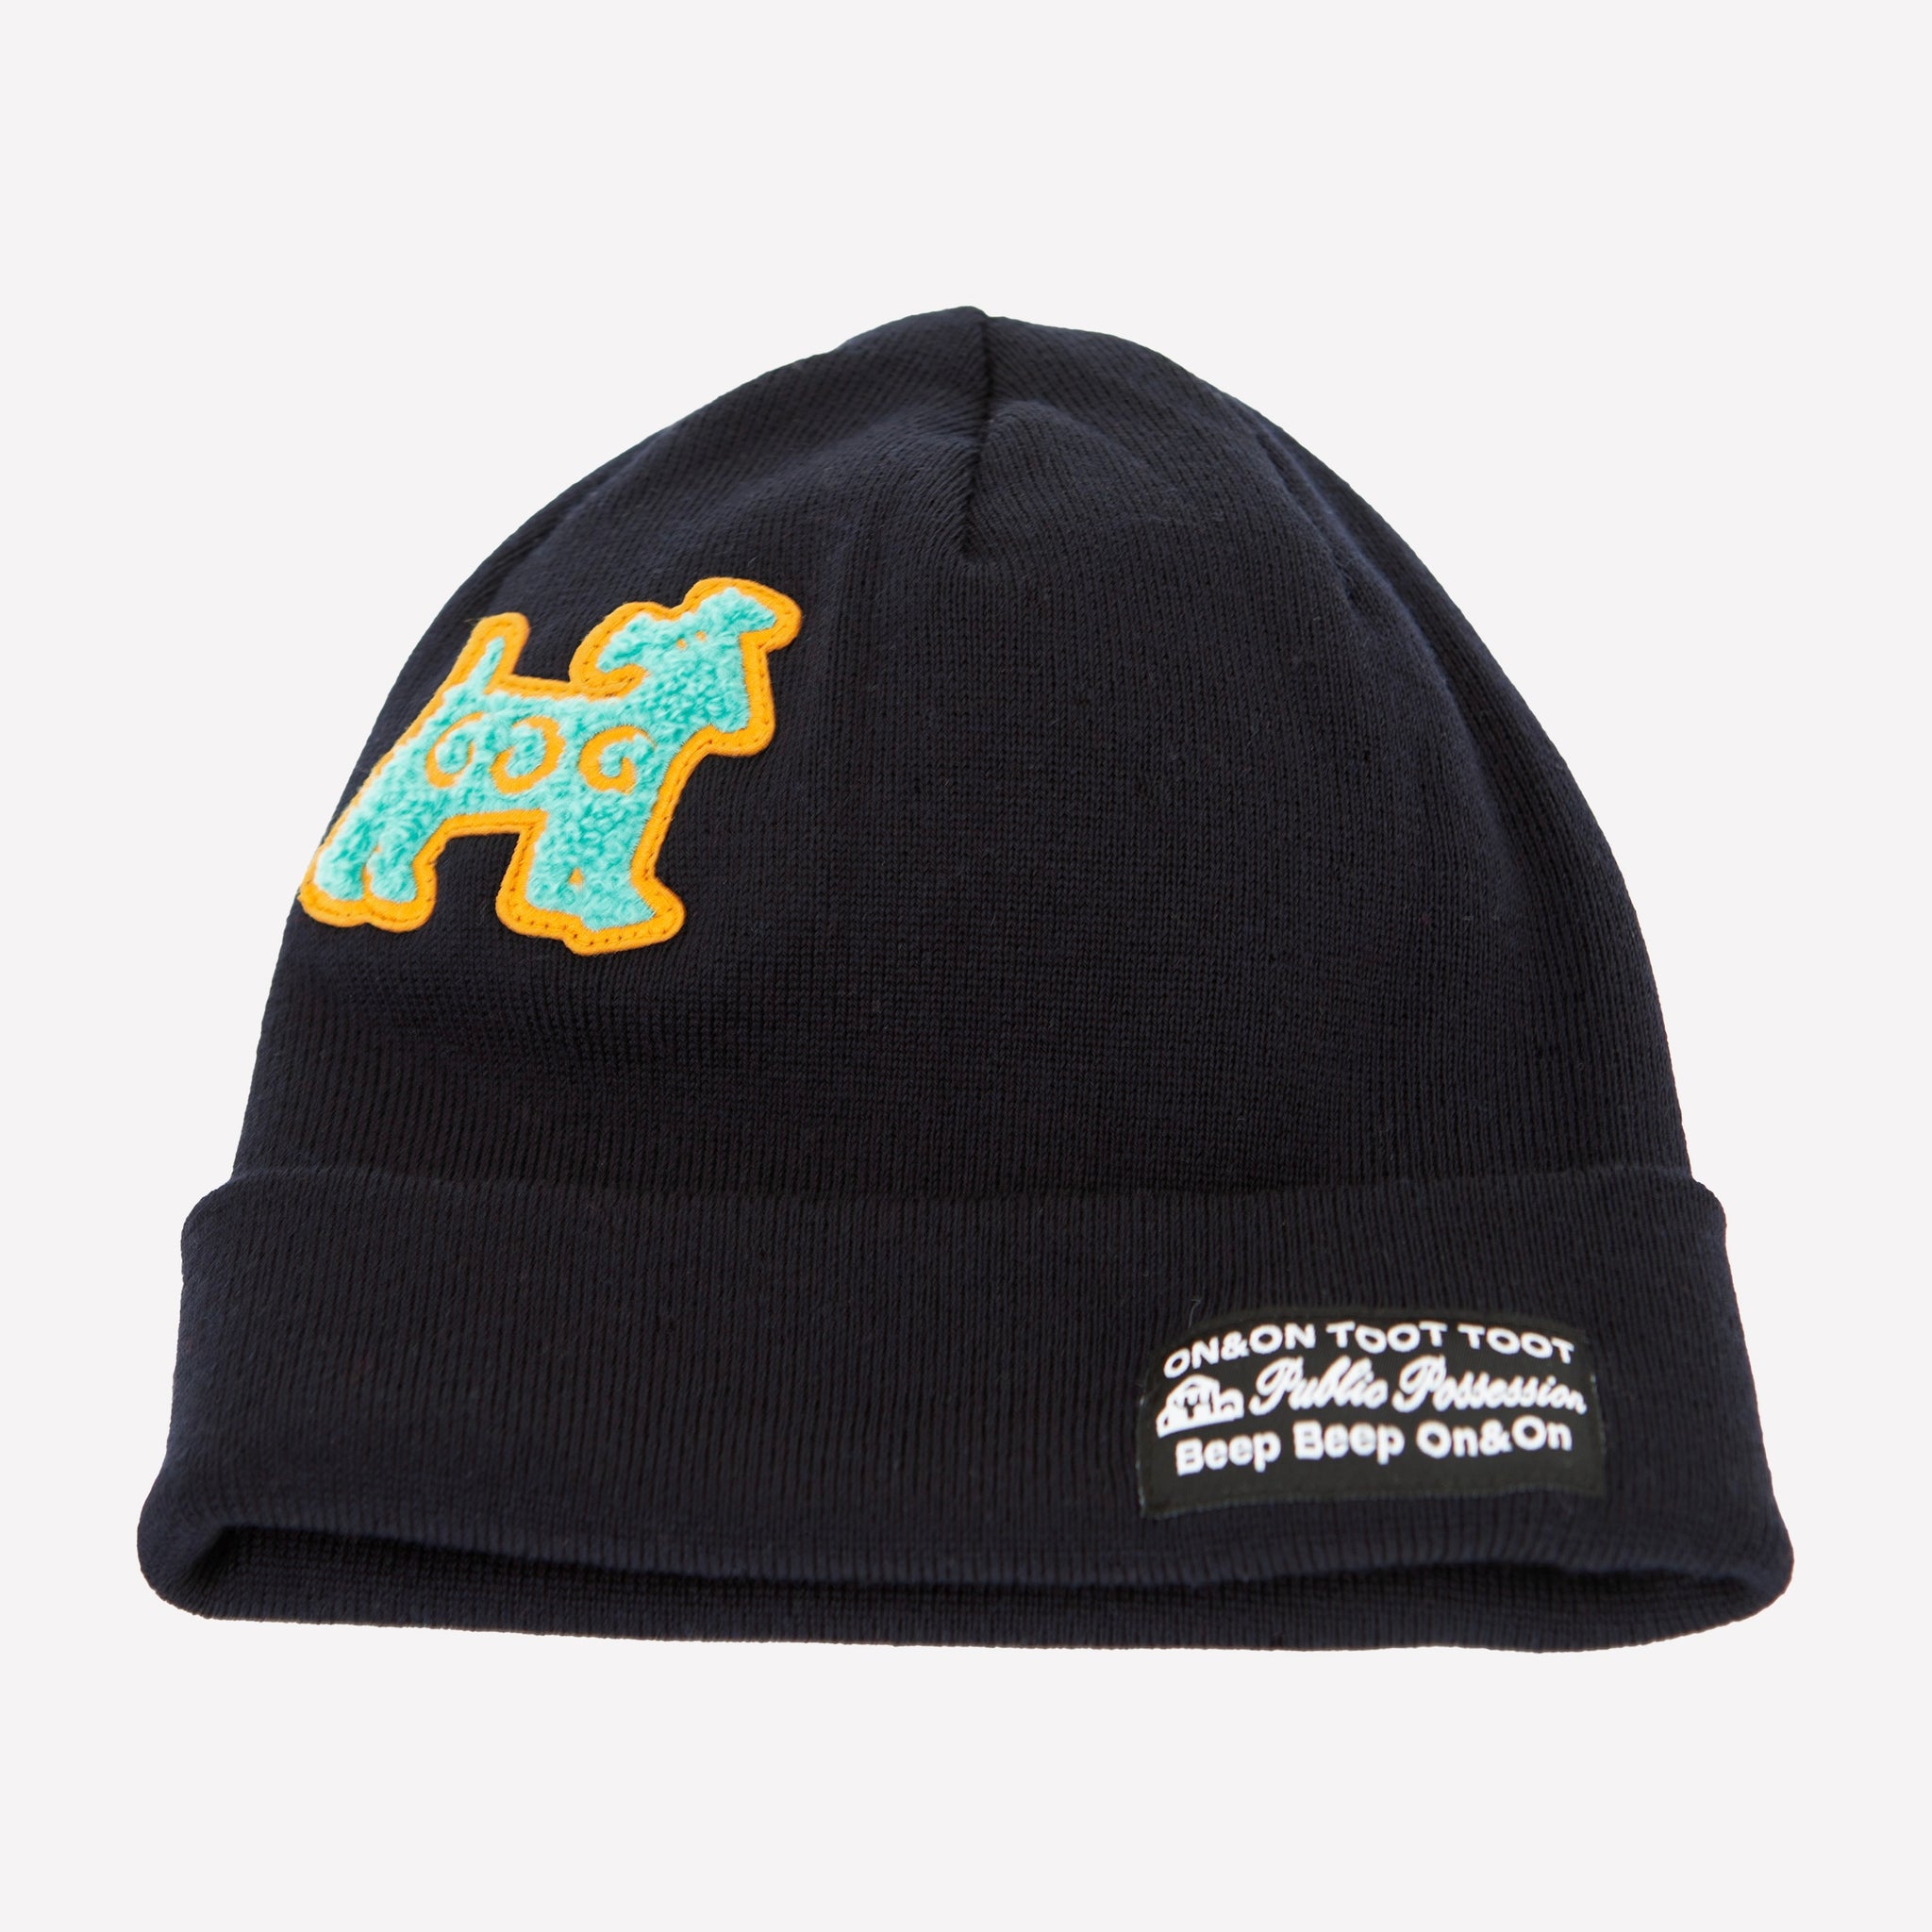 P.P. Dog" Hat